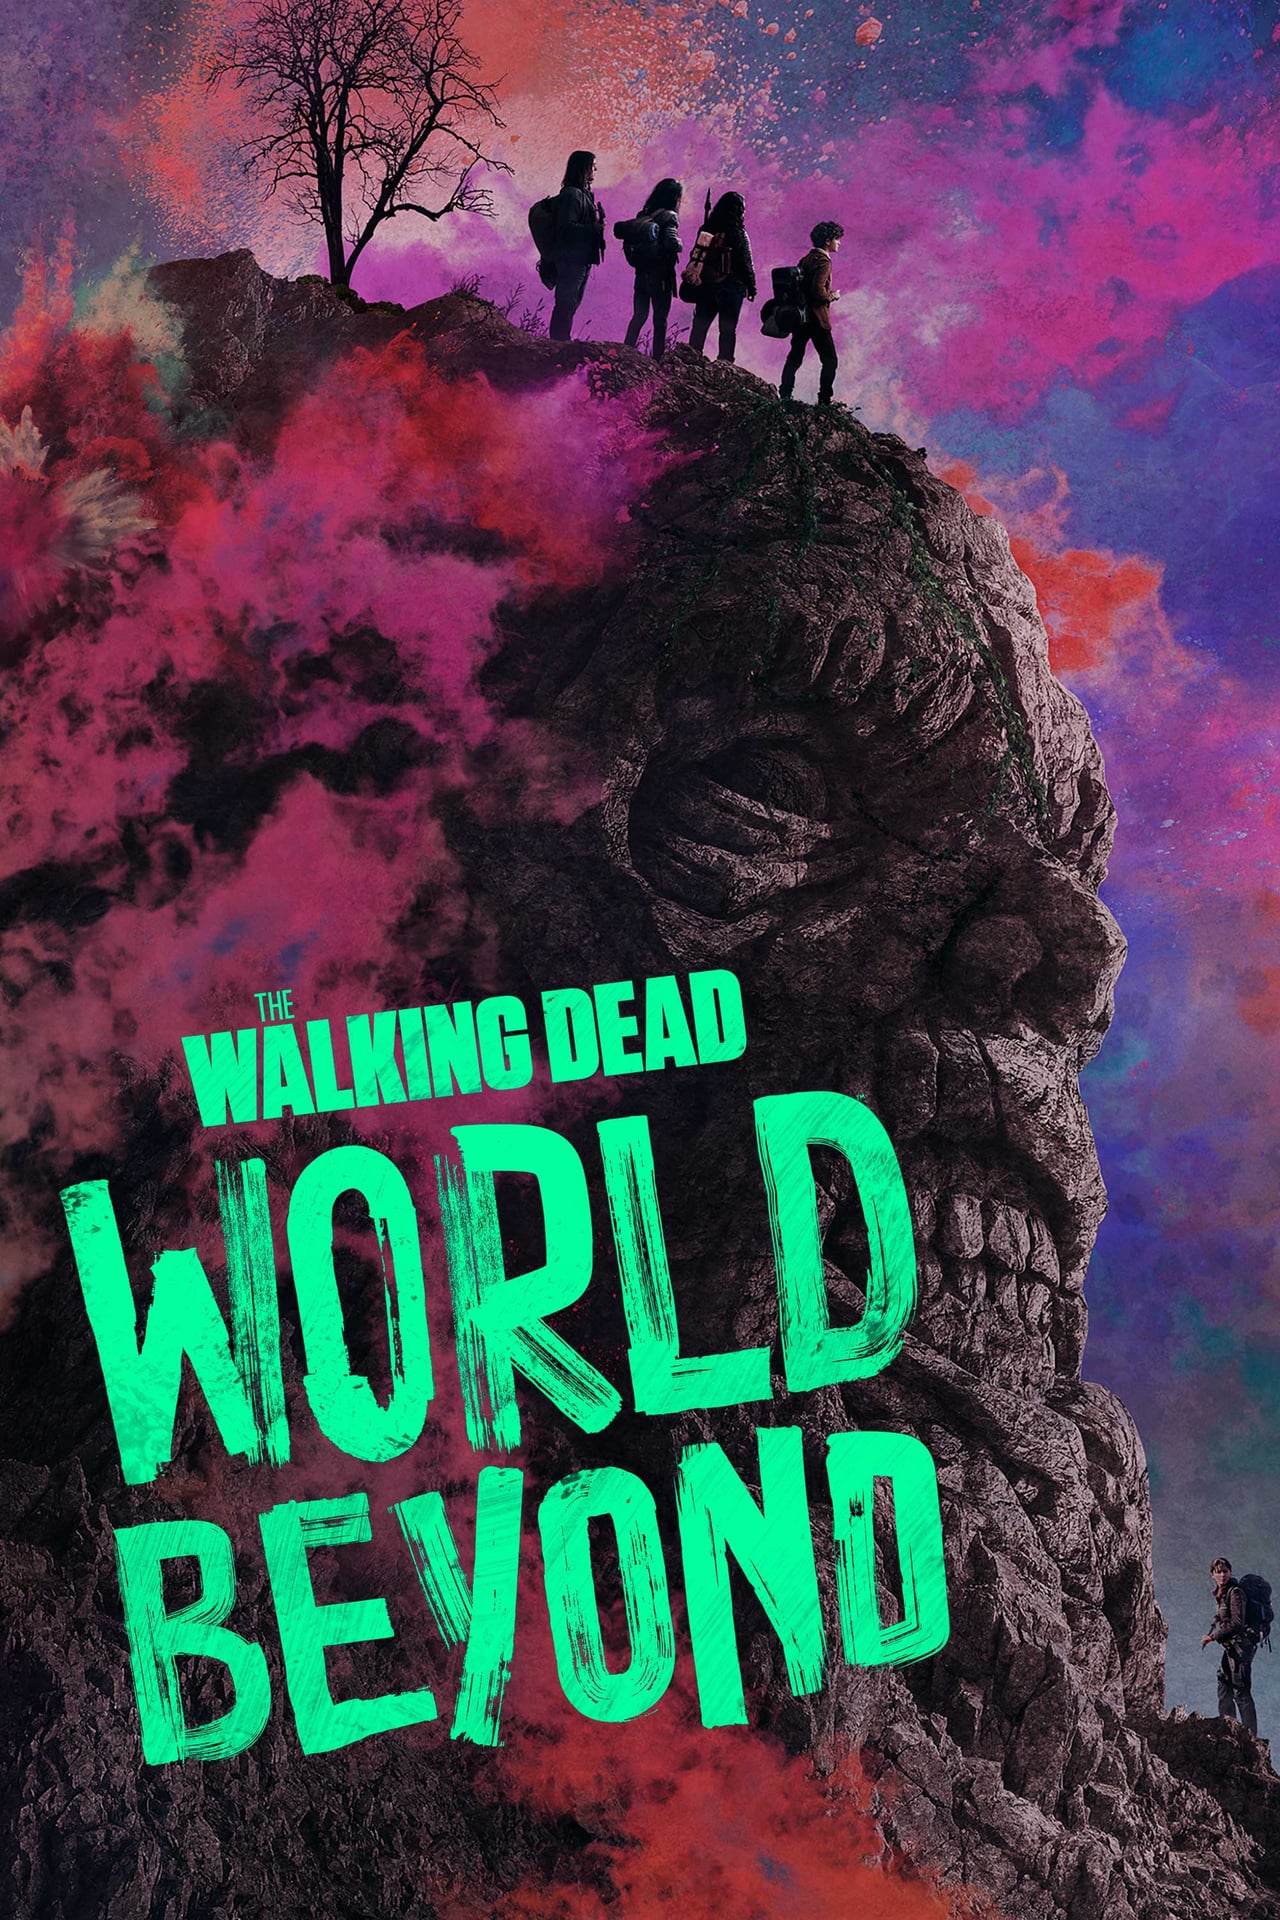 The Walking Dead: World Beyond (season 2)